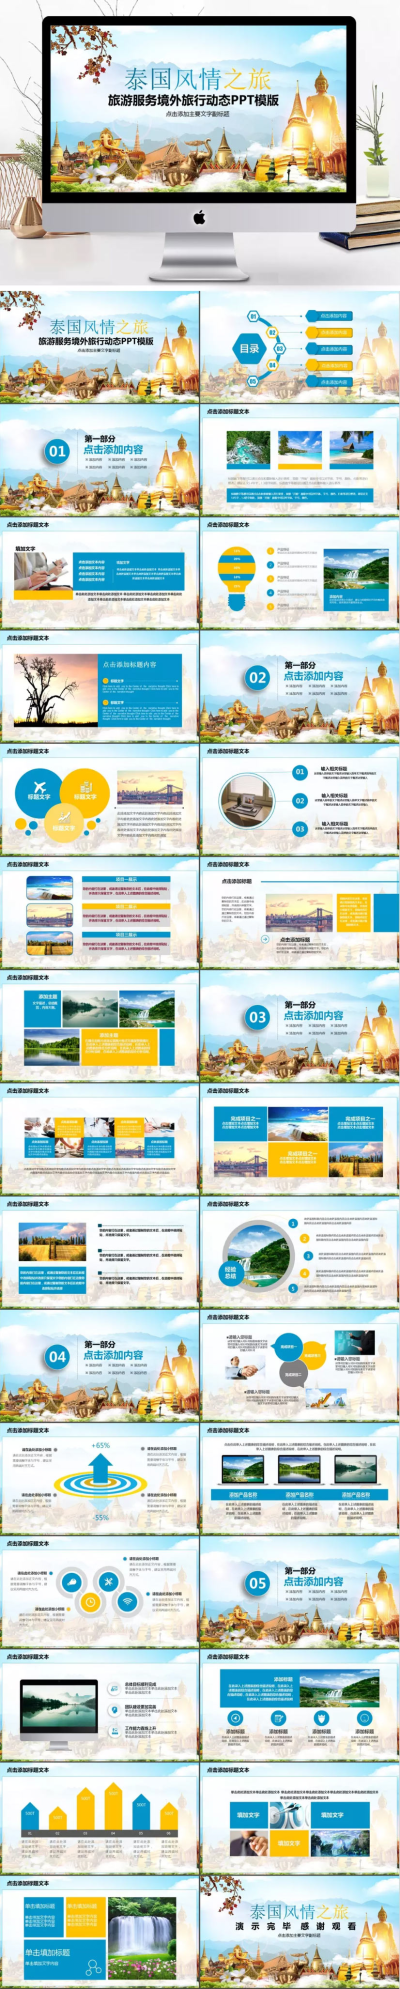 东南亚风情泰国旅游活动宣传策划PPT模板下载